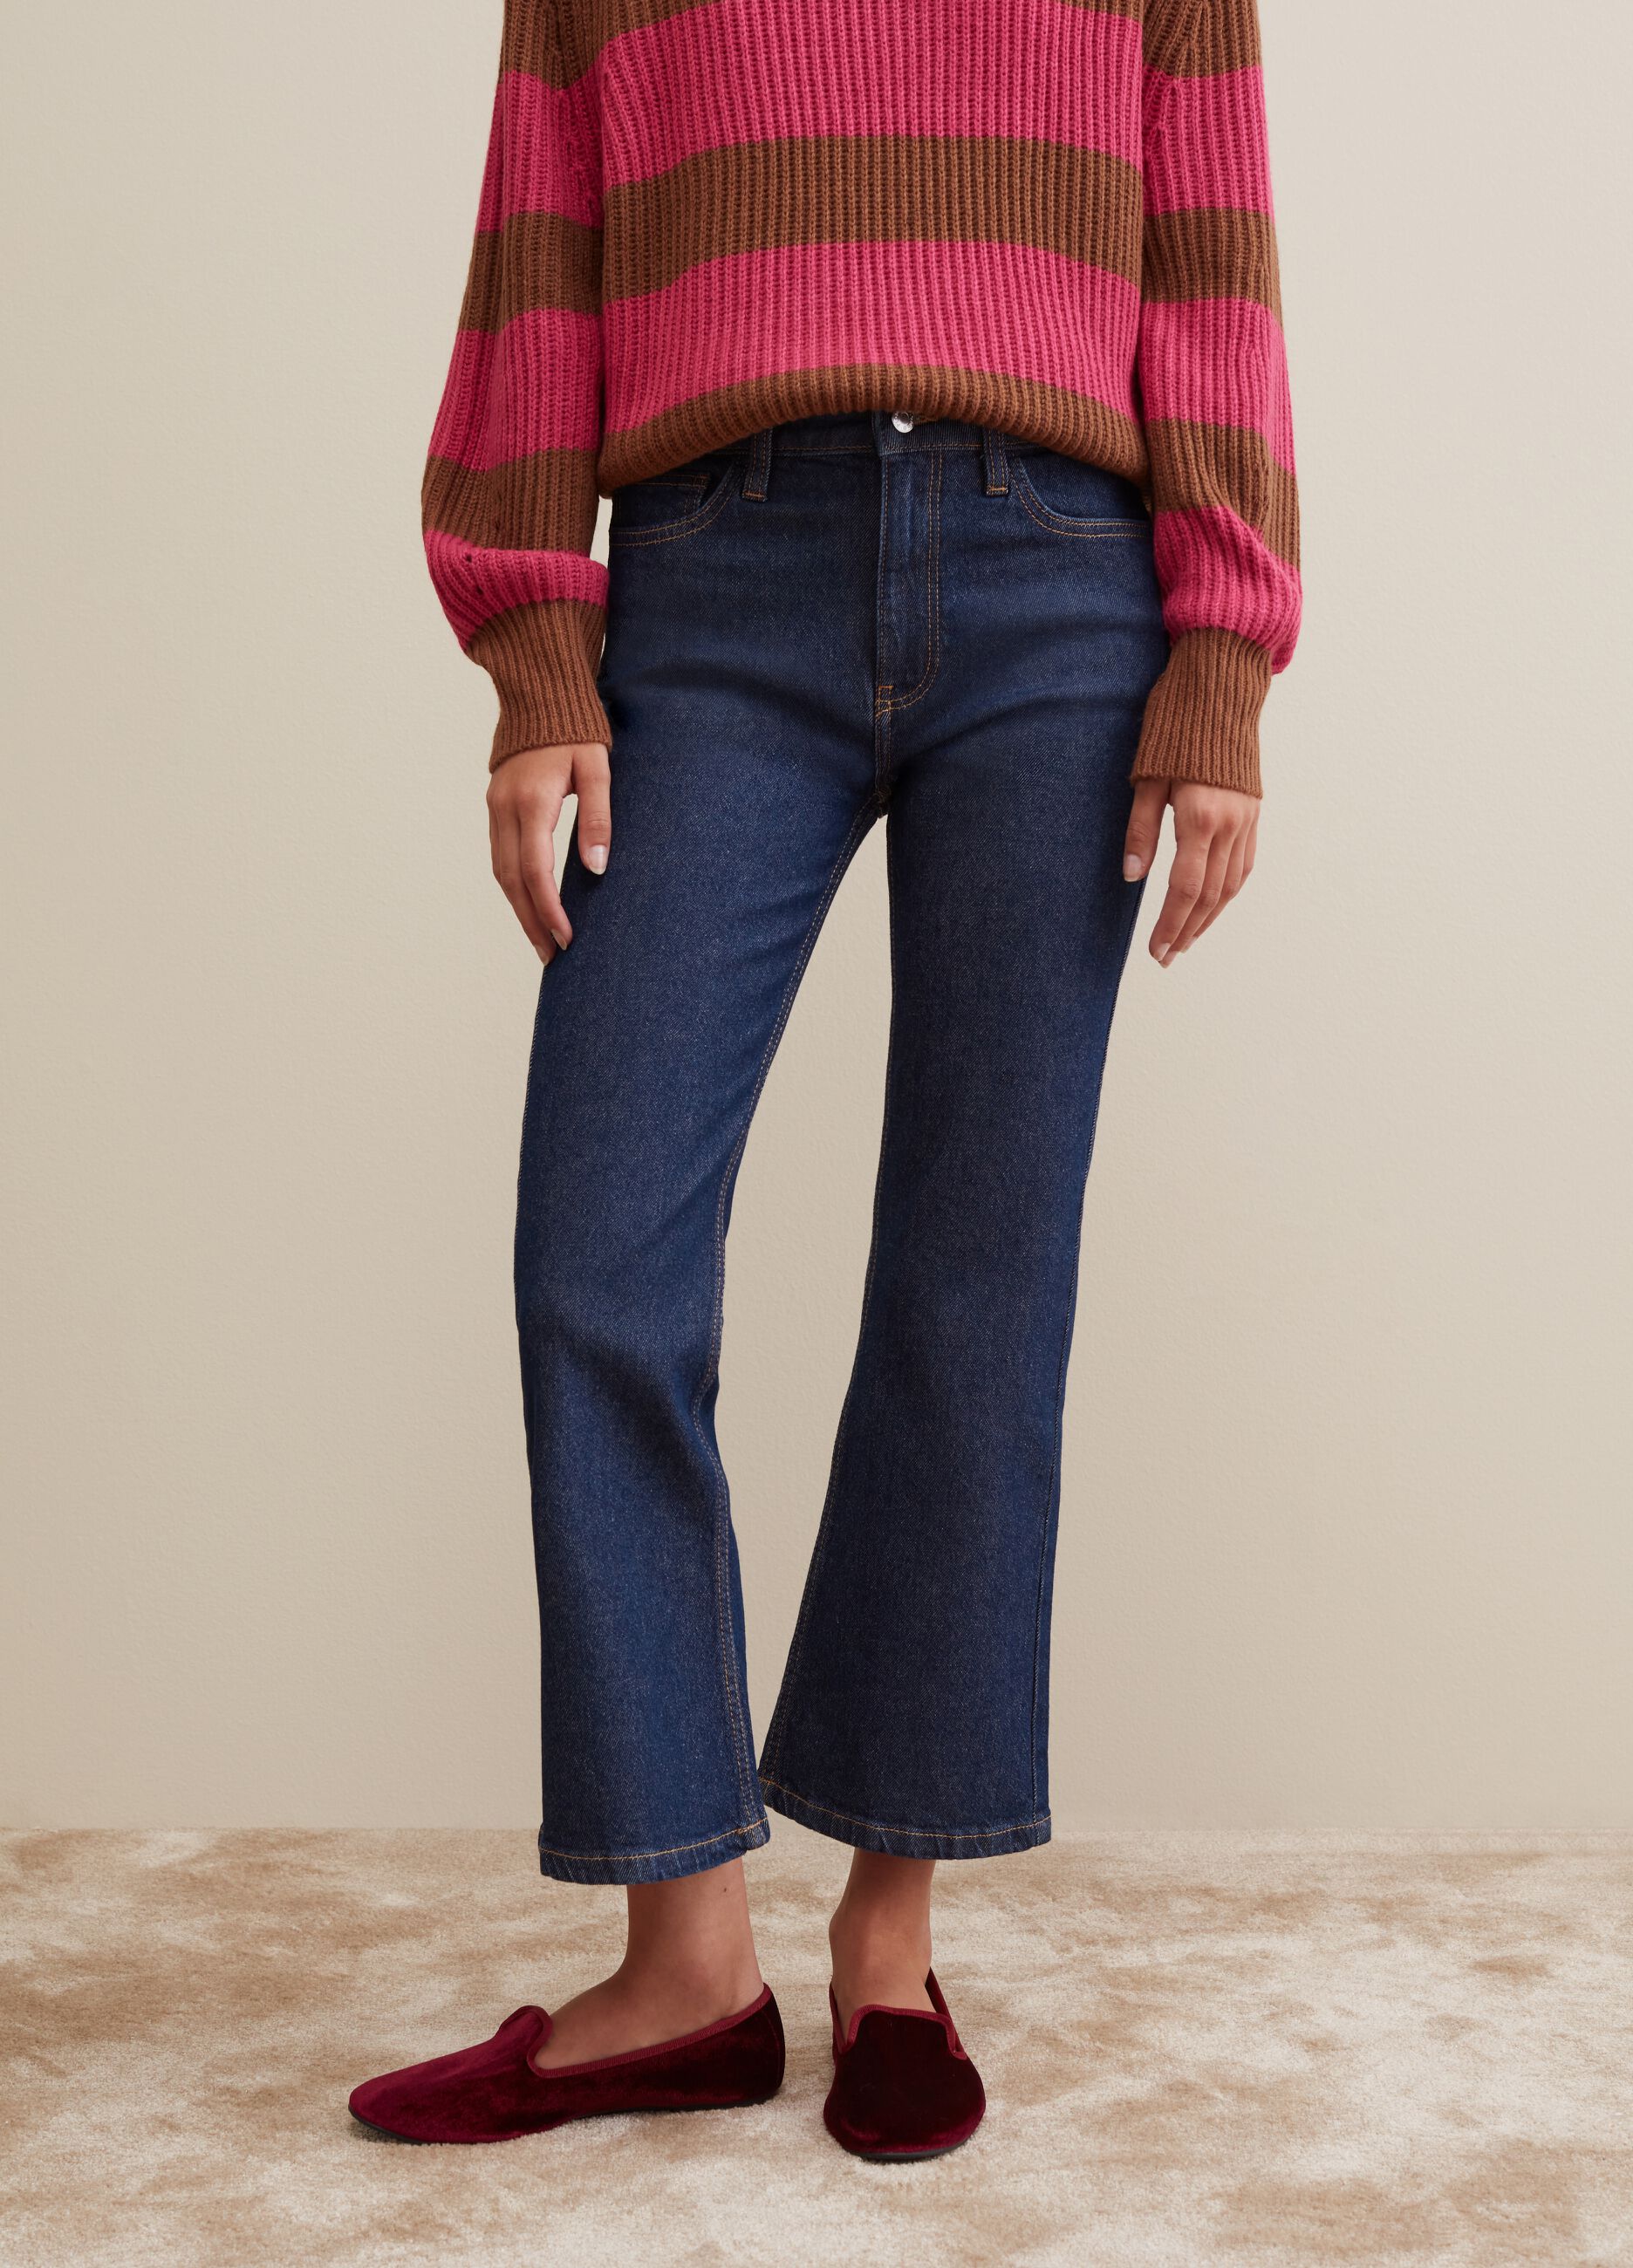 Wide More PIOMBO | & Skinny, Leg Jeans: Women\'s Italian